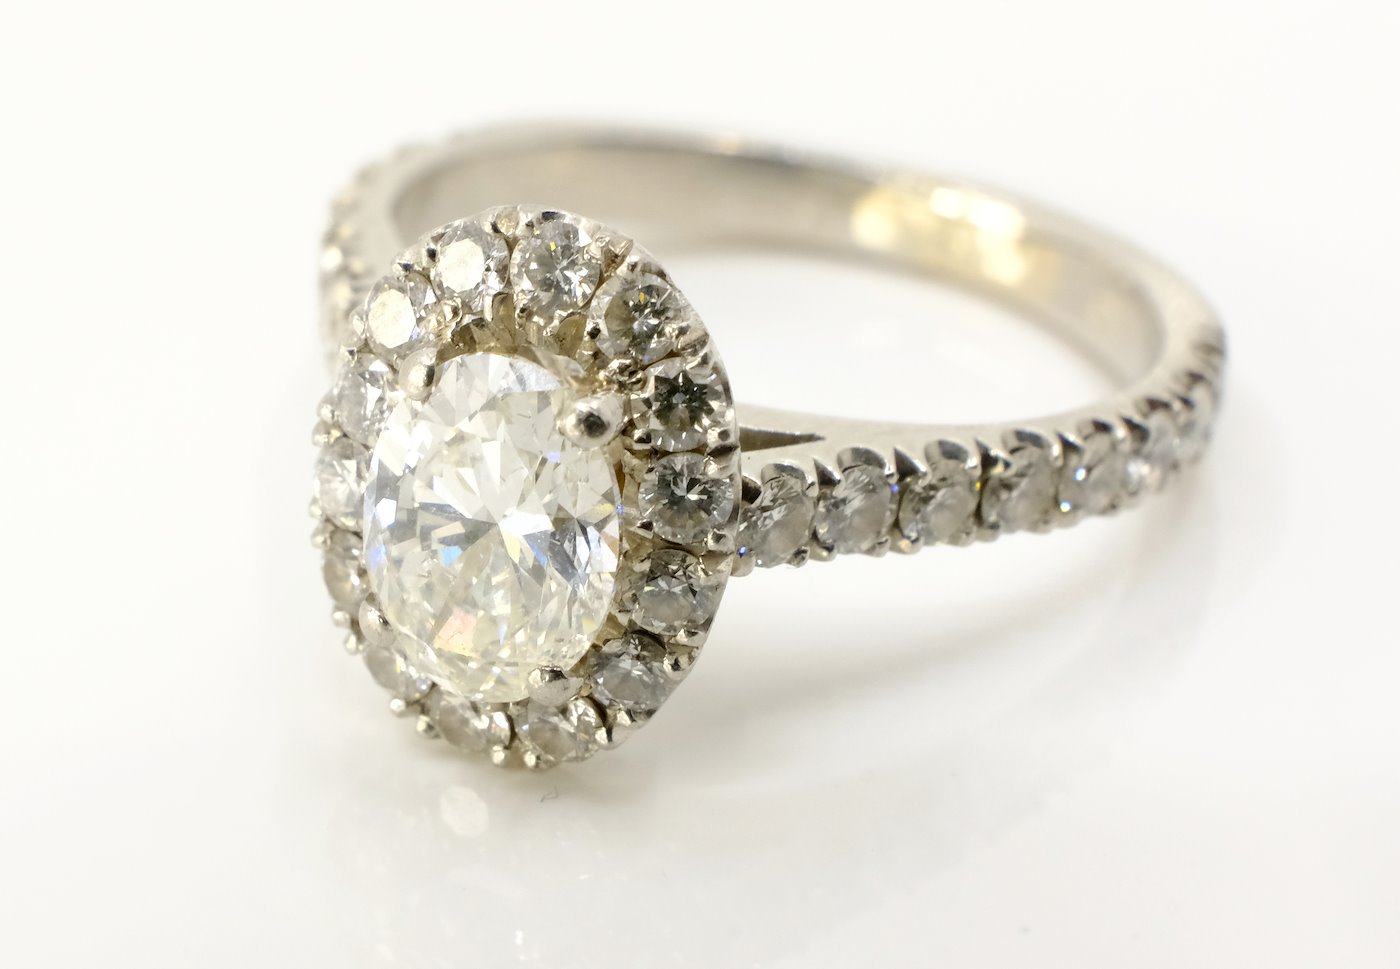 .. - Prsten s diamanty, zlato 950/1000, hrubá hmotnost 5,45 g